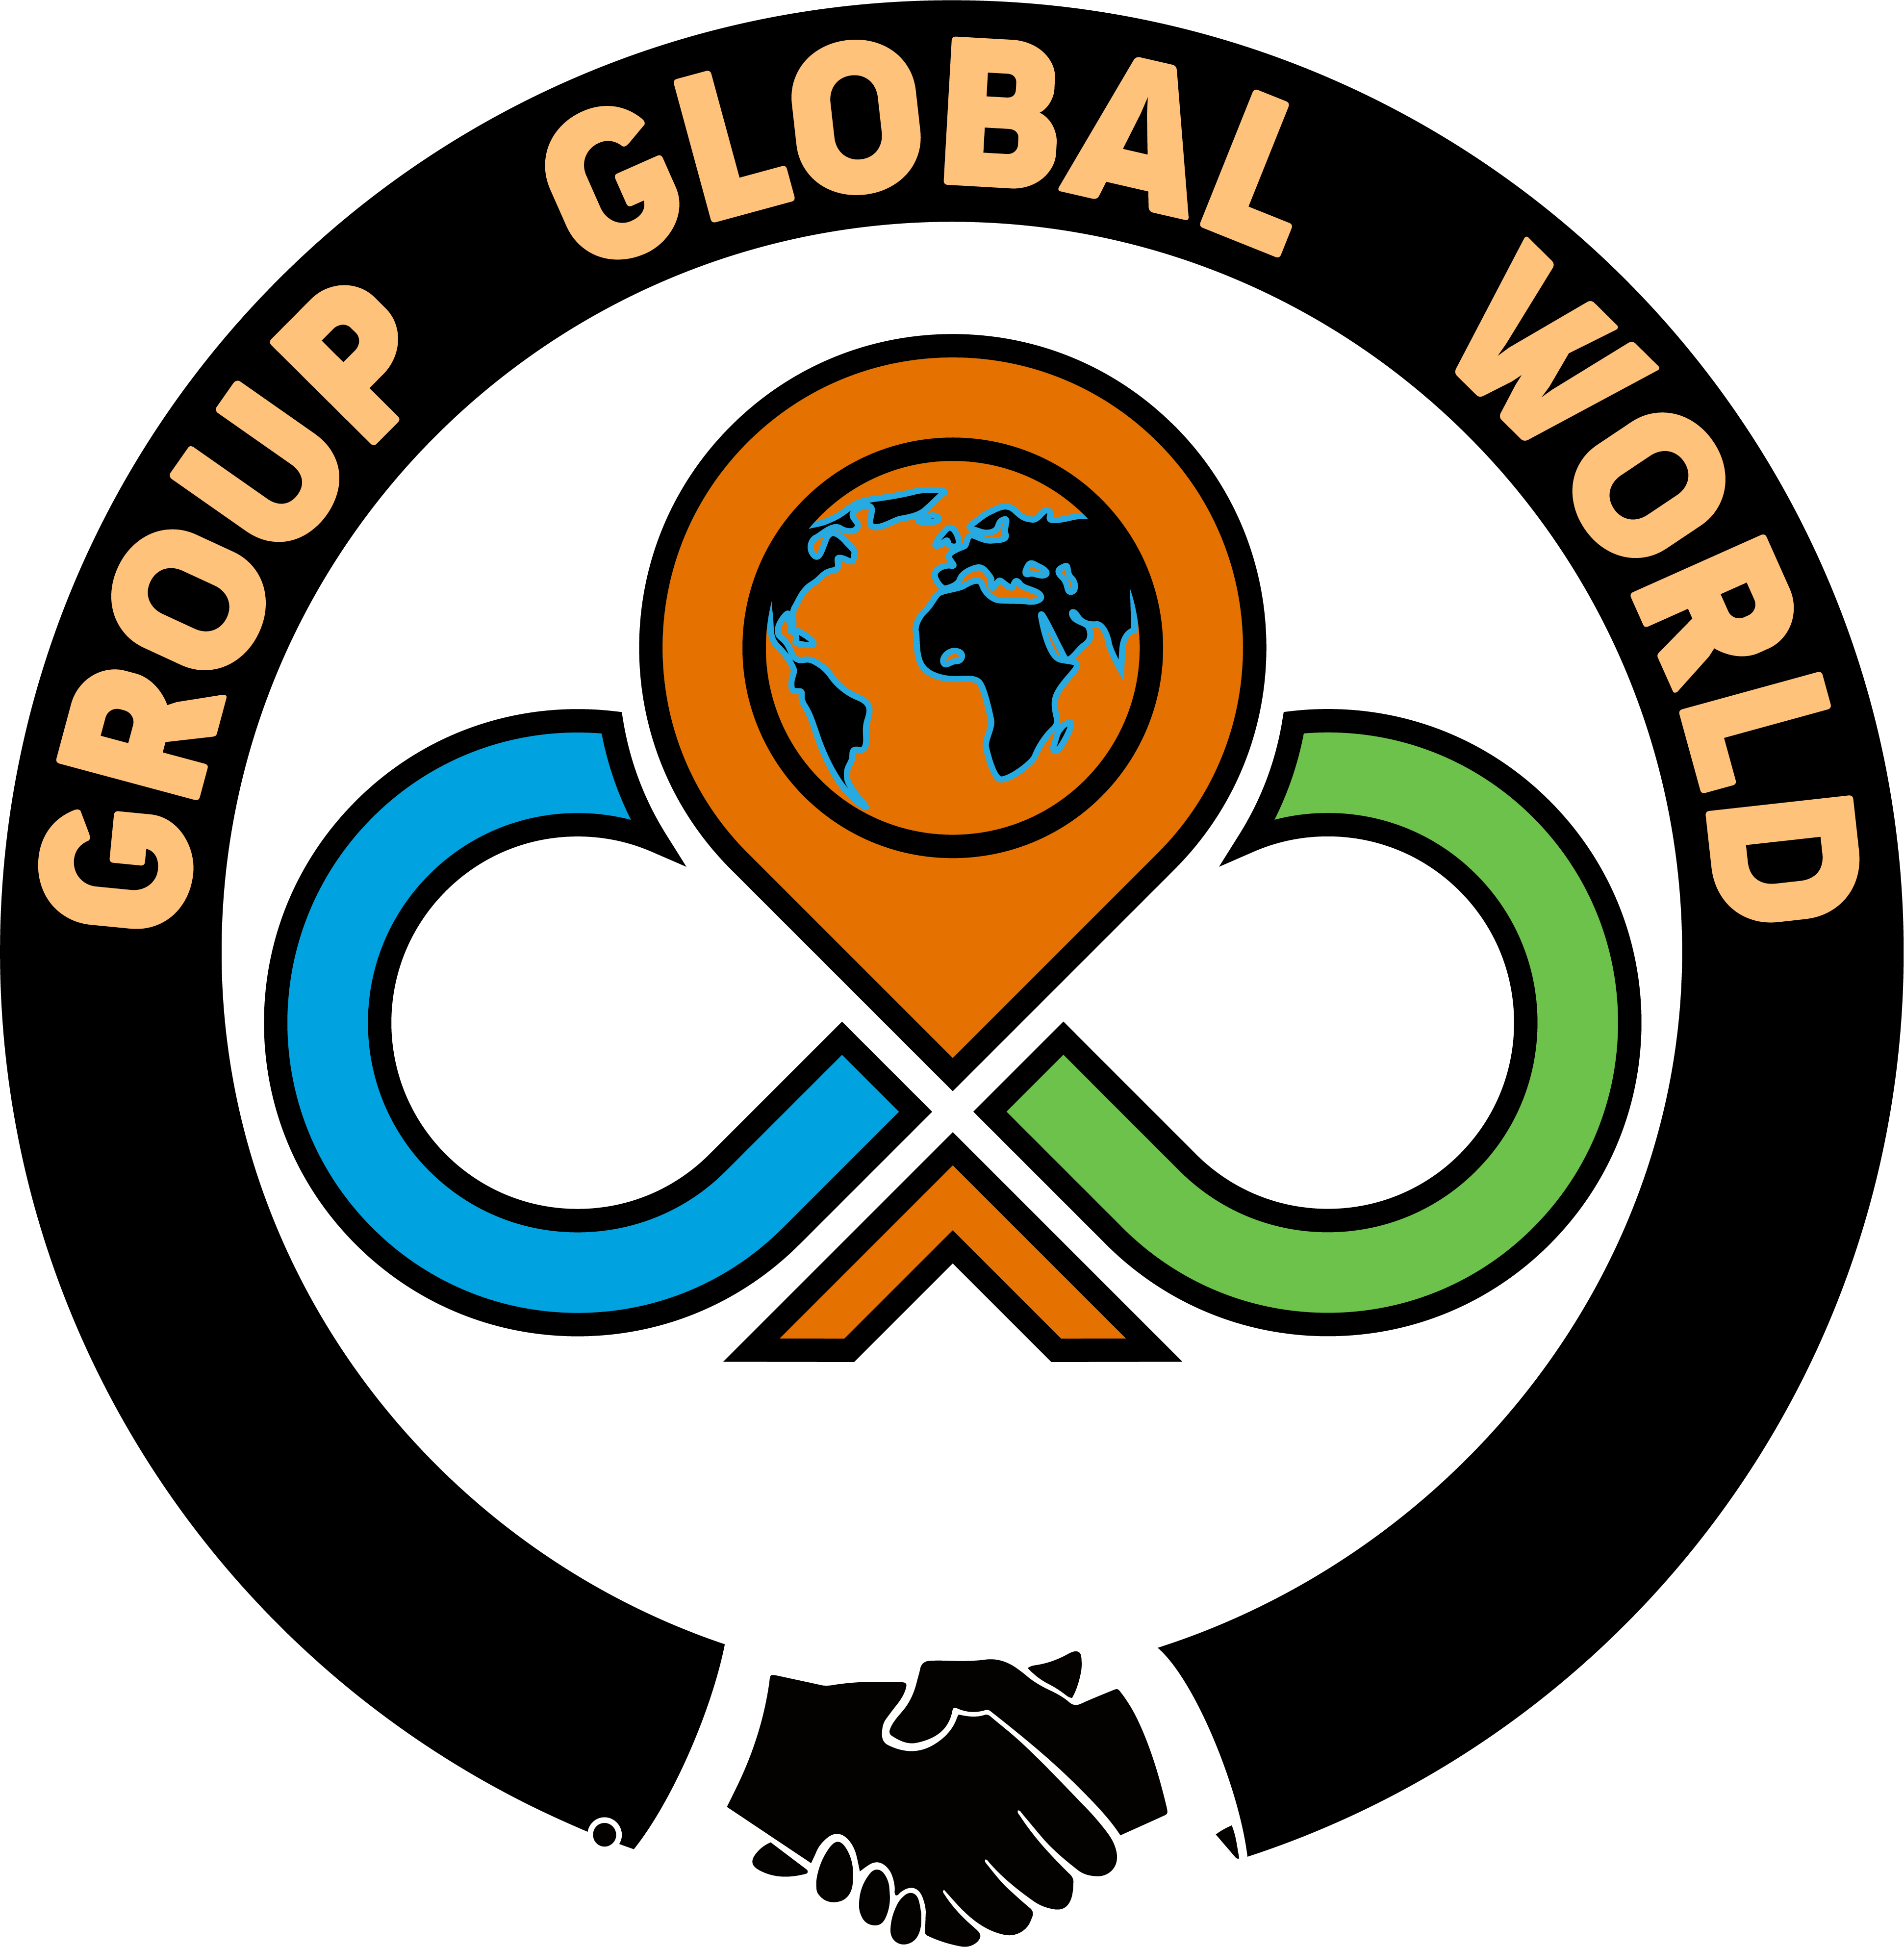 GROUP GLOBAL WORLD